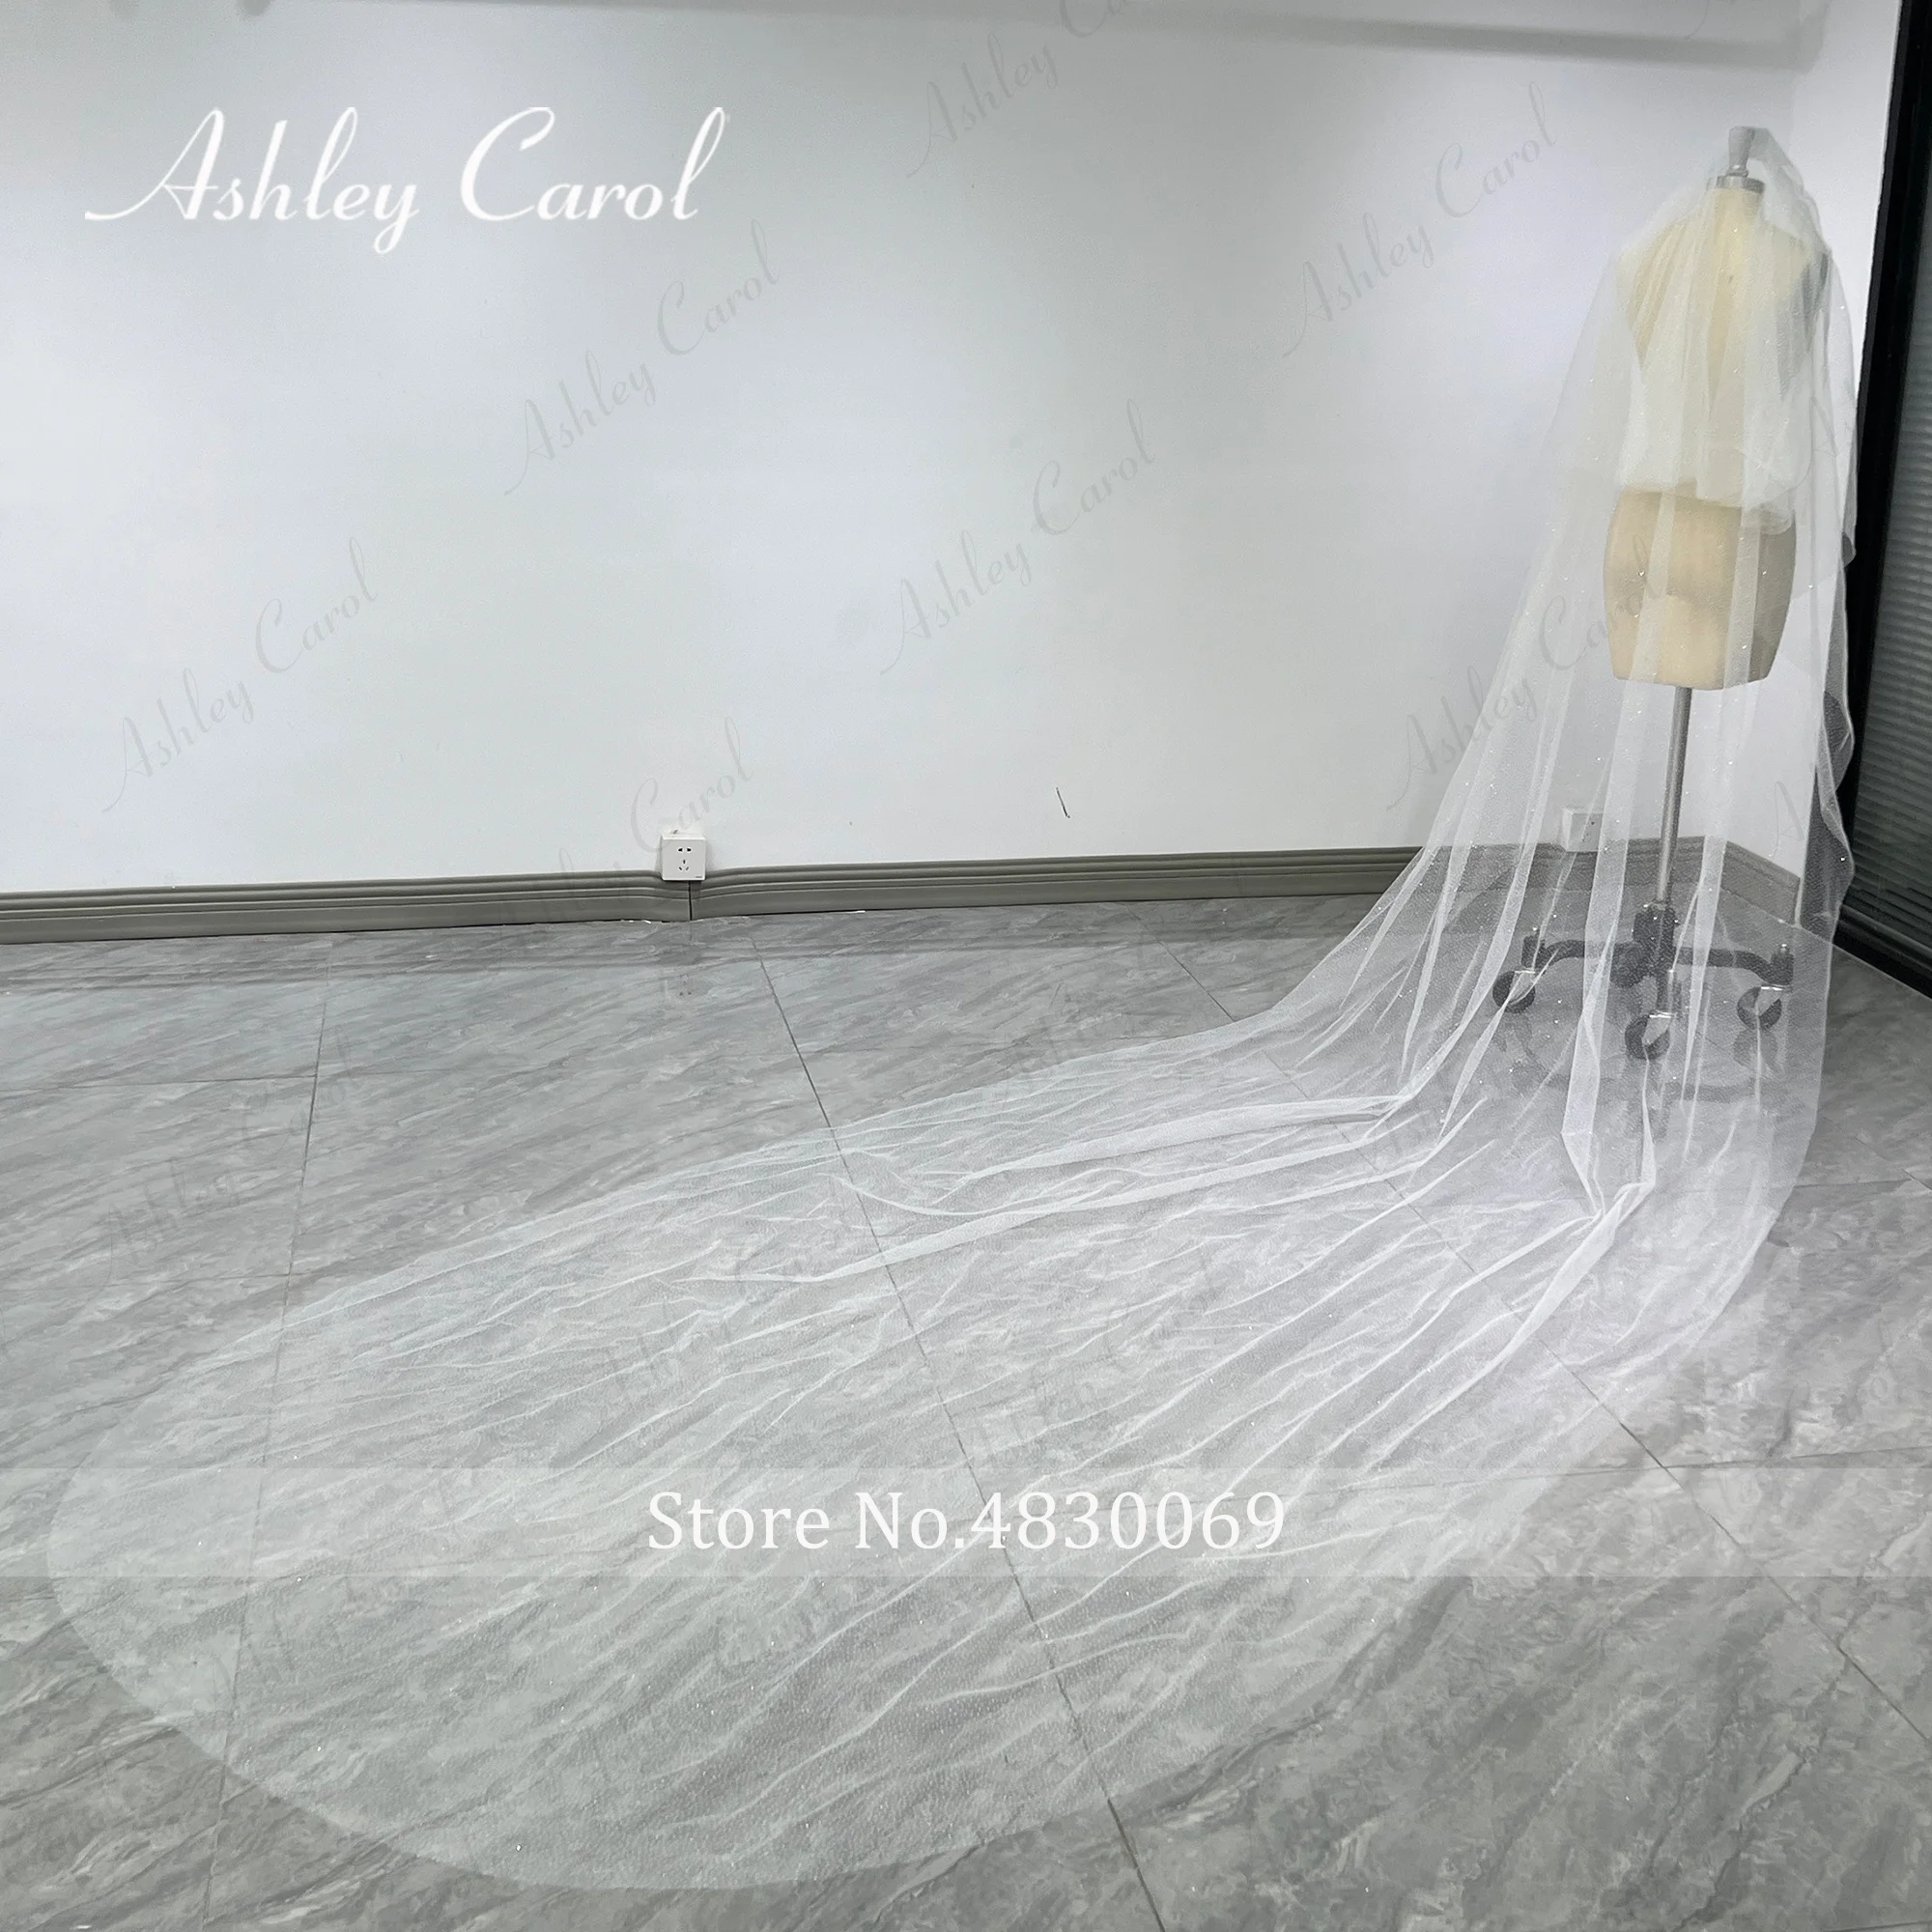 Свадебные фаты Ashley Carol из сверкающего тюля на заказ Изображение 3